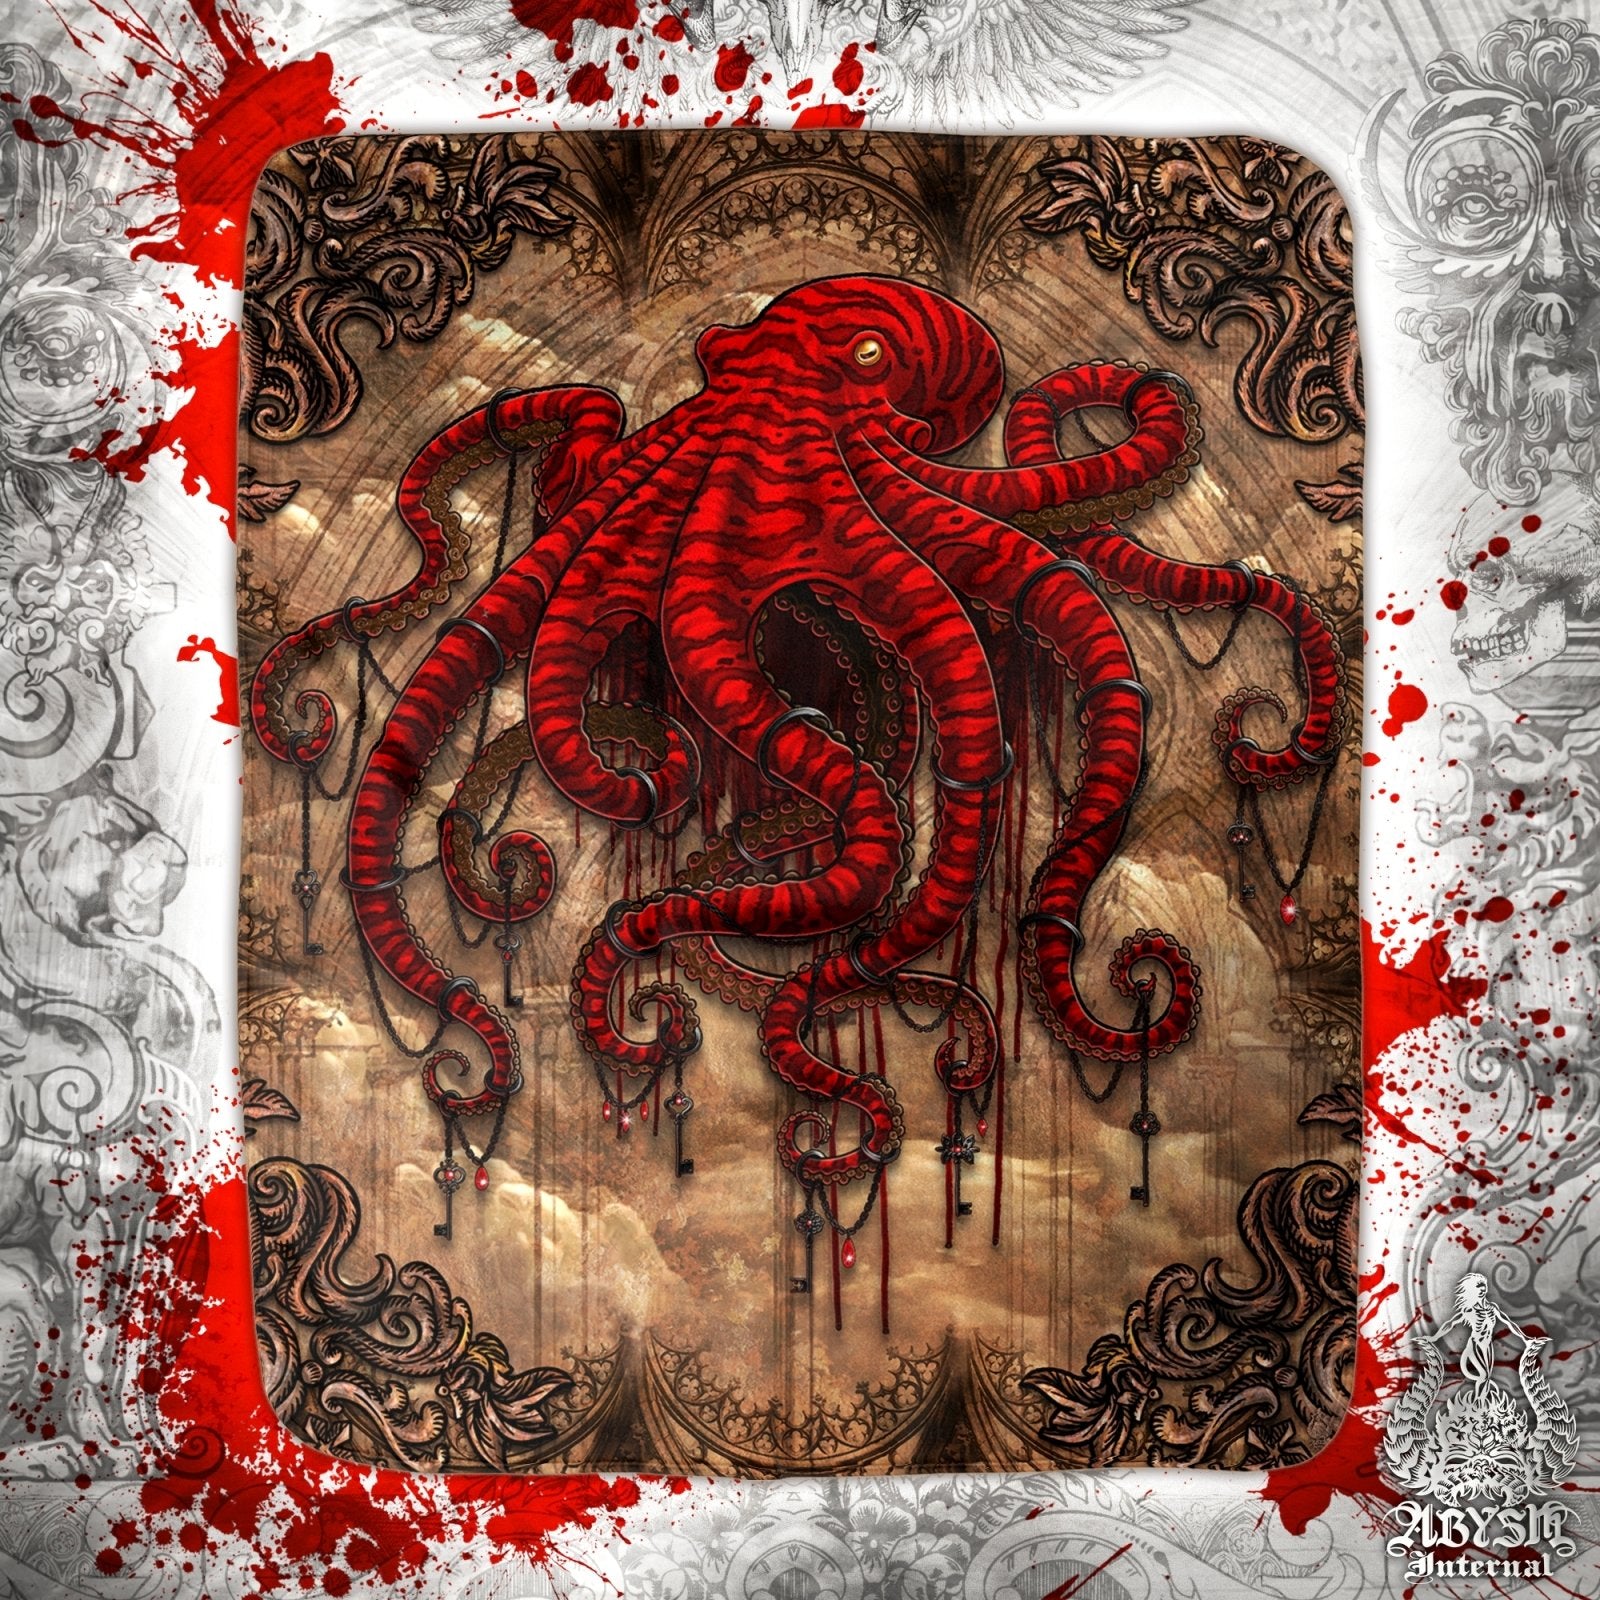 Gothic Throw Fleece Blanket, Goth Gift, Horror Home Decor, Alternative Art Gift - Red Octopus, Beige - Abysm Internal